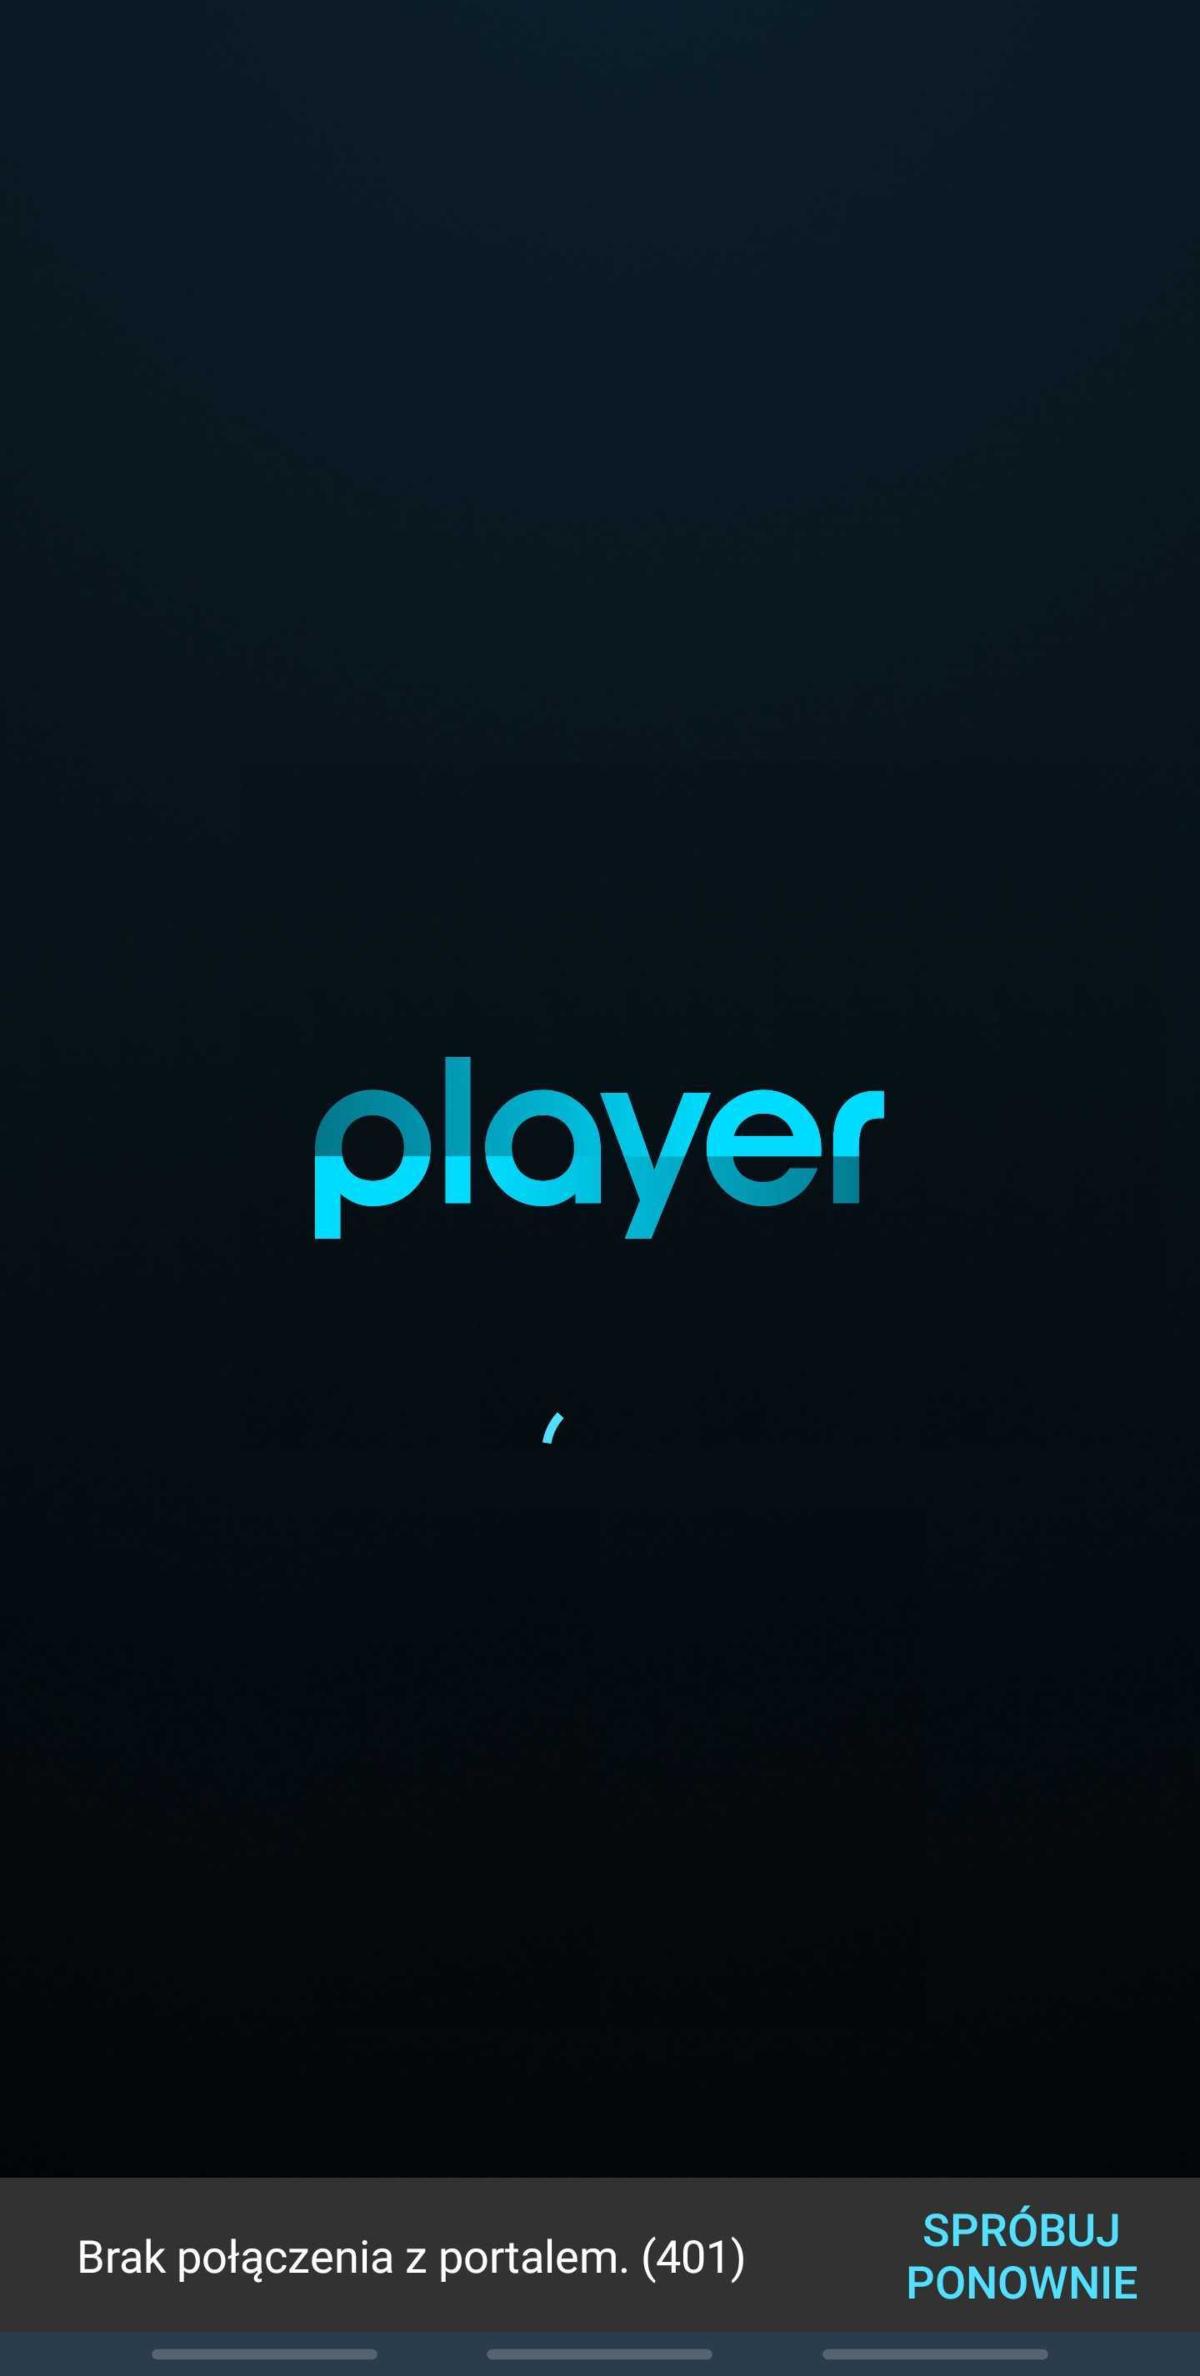 Player.pl nie dziala problemy tvn programy